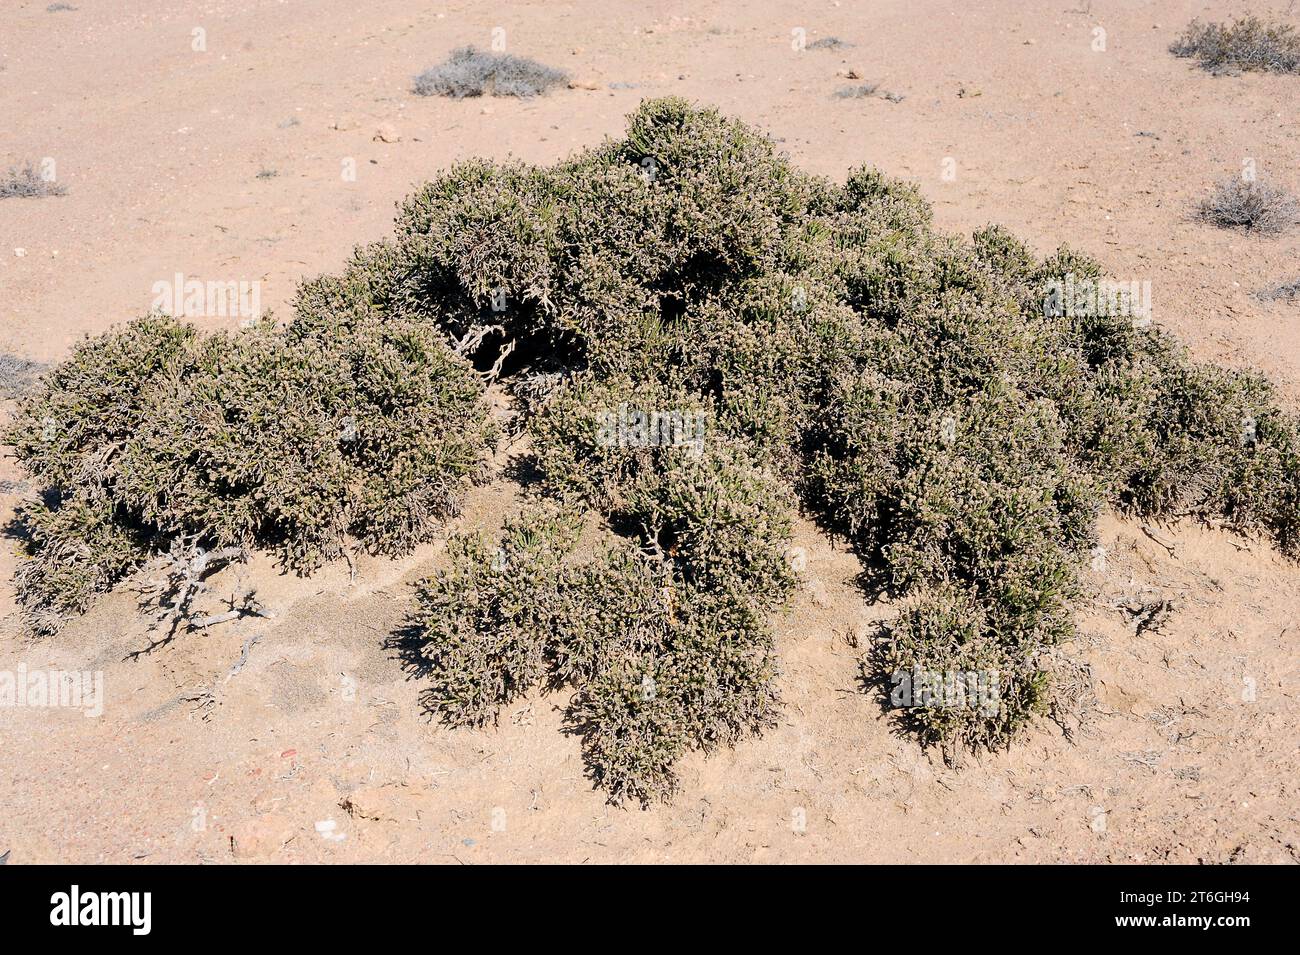 Arthraerua leubnitziae is an evergreen shrub native to Namibia. This photo was taken near Swakopmund, Namibia. Stock Photo